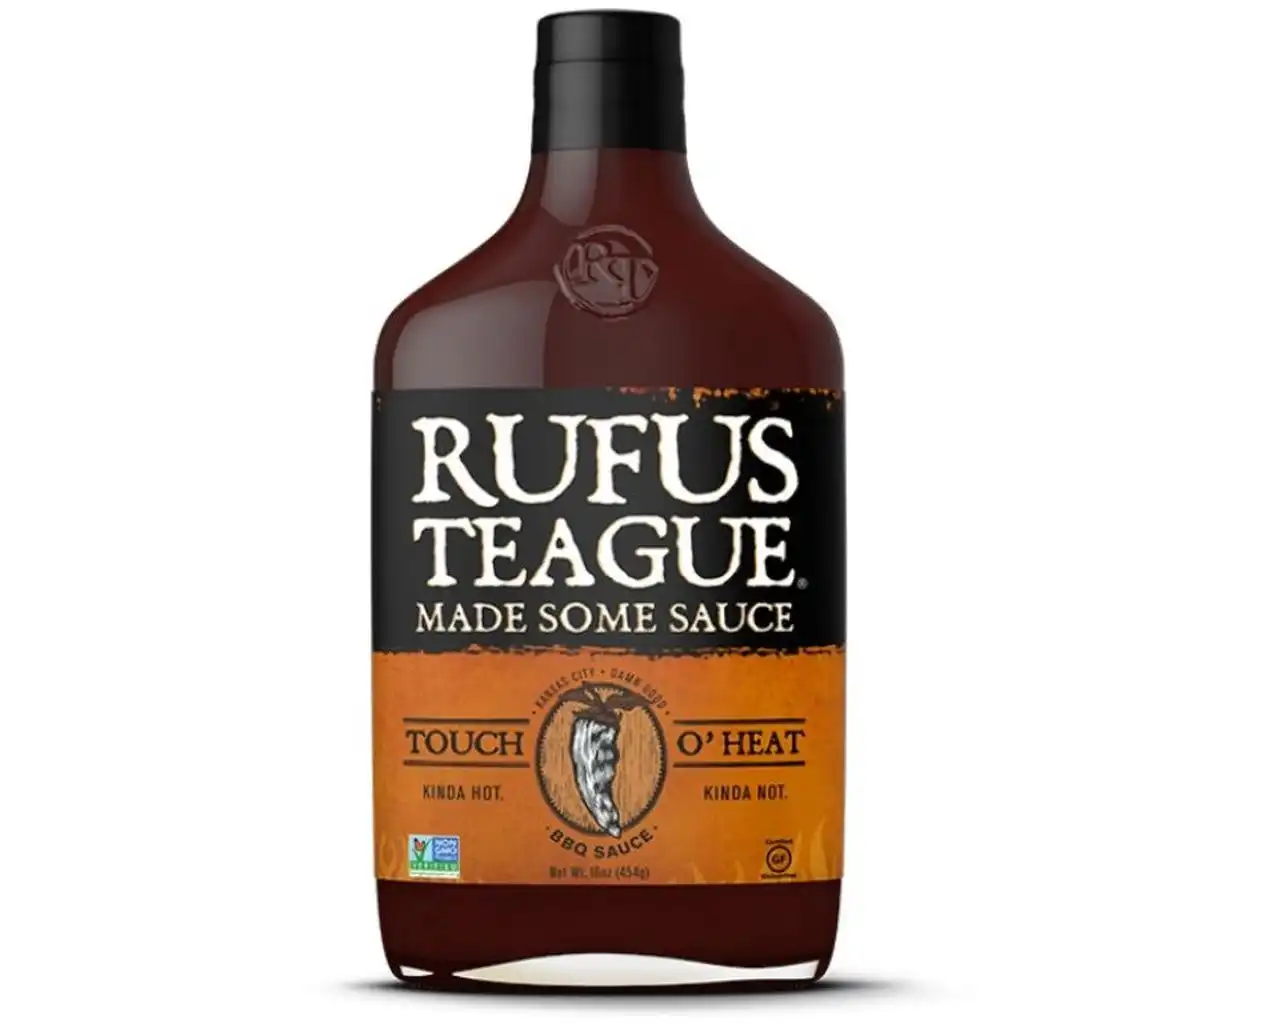 Rufus Teague Touch O Heat BBQ Sauce